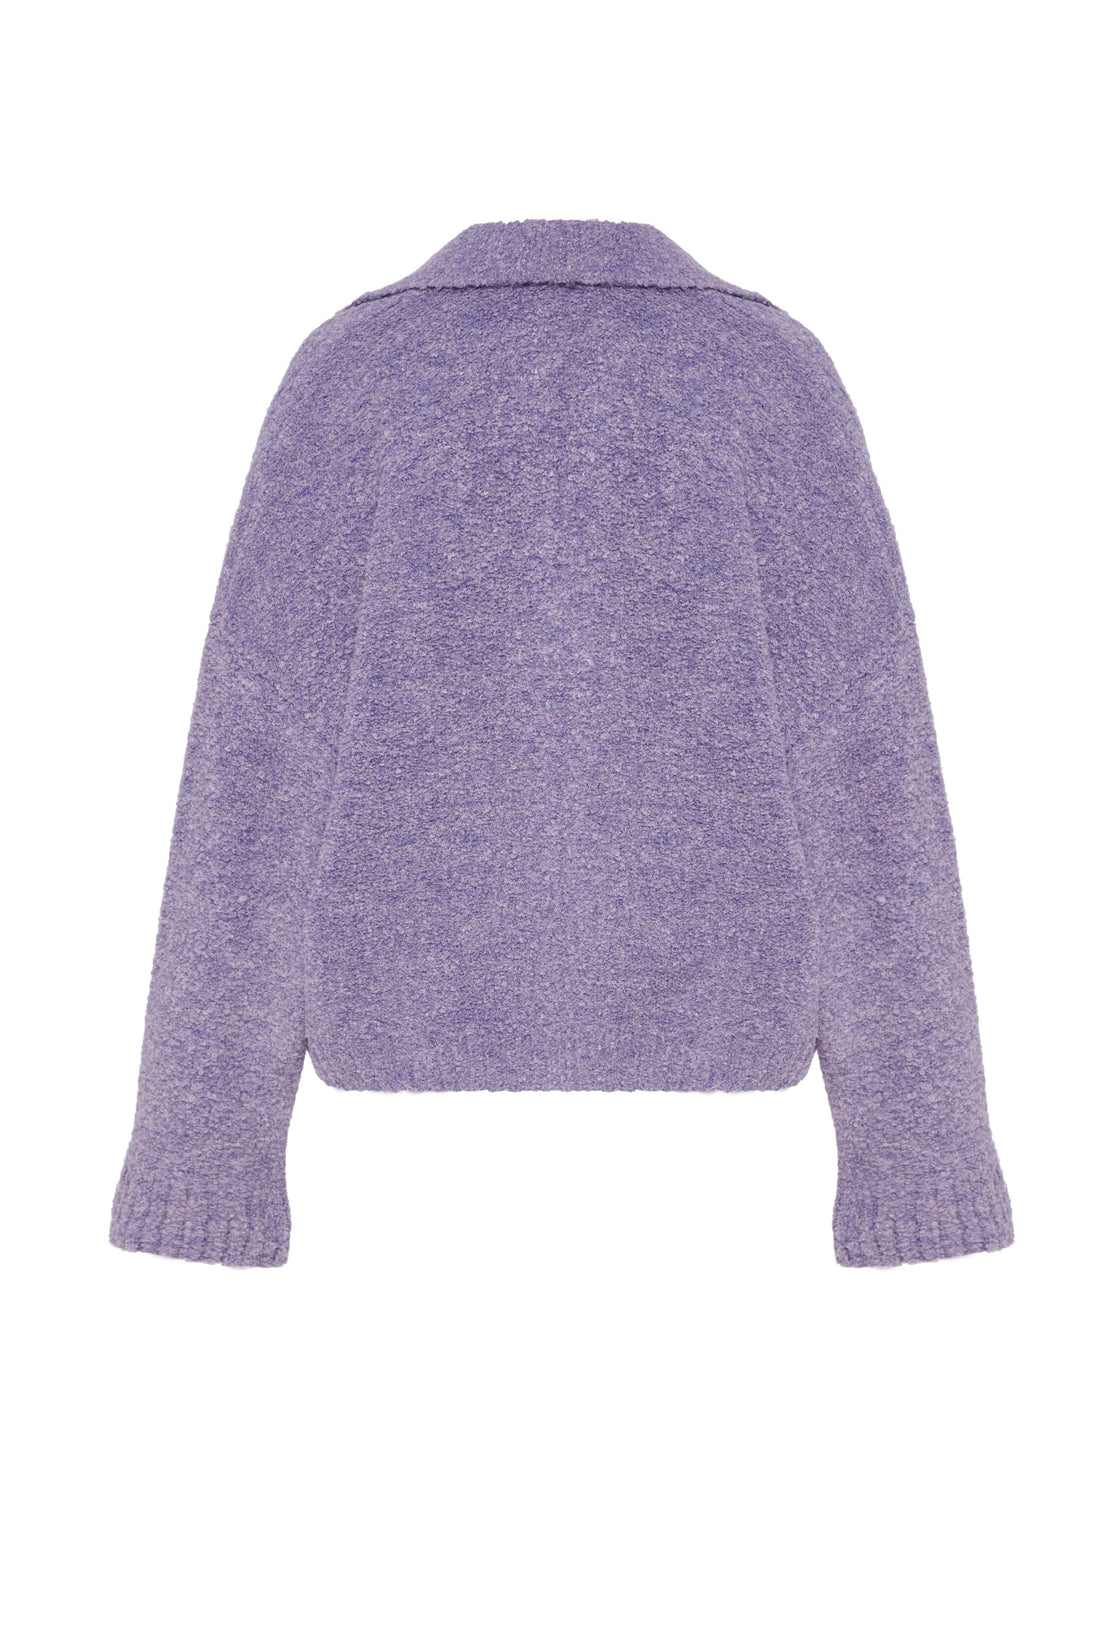 Bouclé sweater, purple (0202)